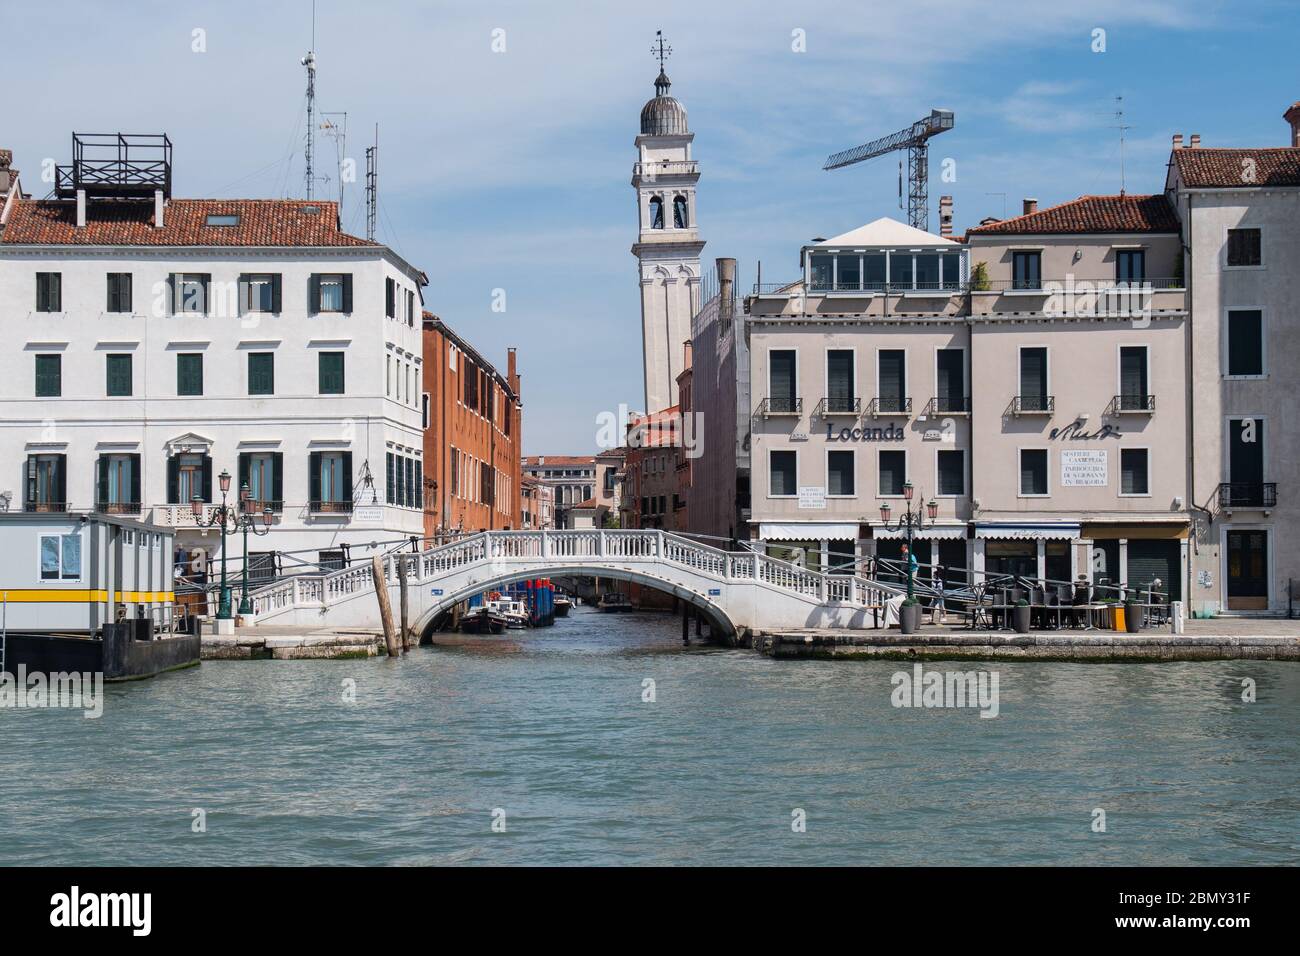 VENEZIA, ITALIA - 08 MAGGIO: Veduta del ponte a e del campanile dei 'dei Greci' durante l'arenamento per contenere la diffusione del Coronavirus. Foto Stock